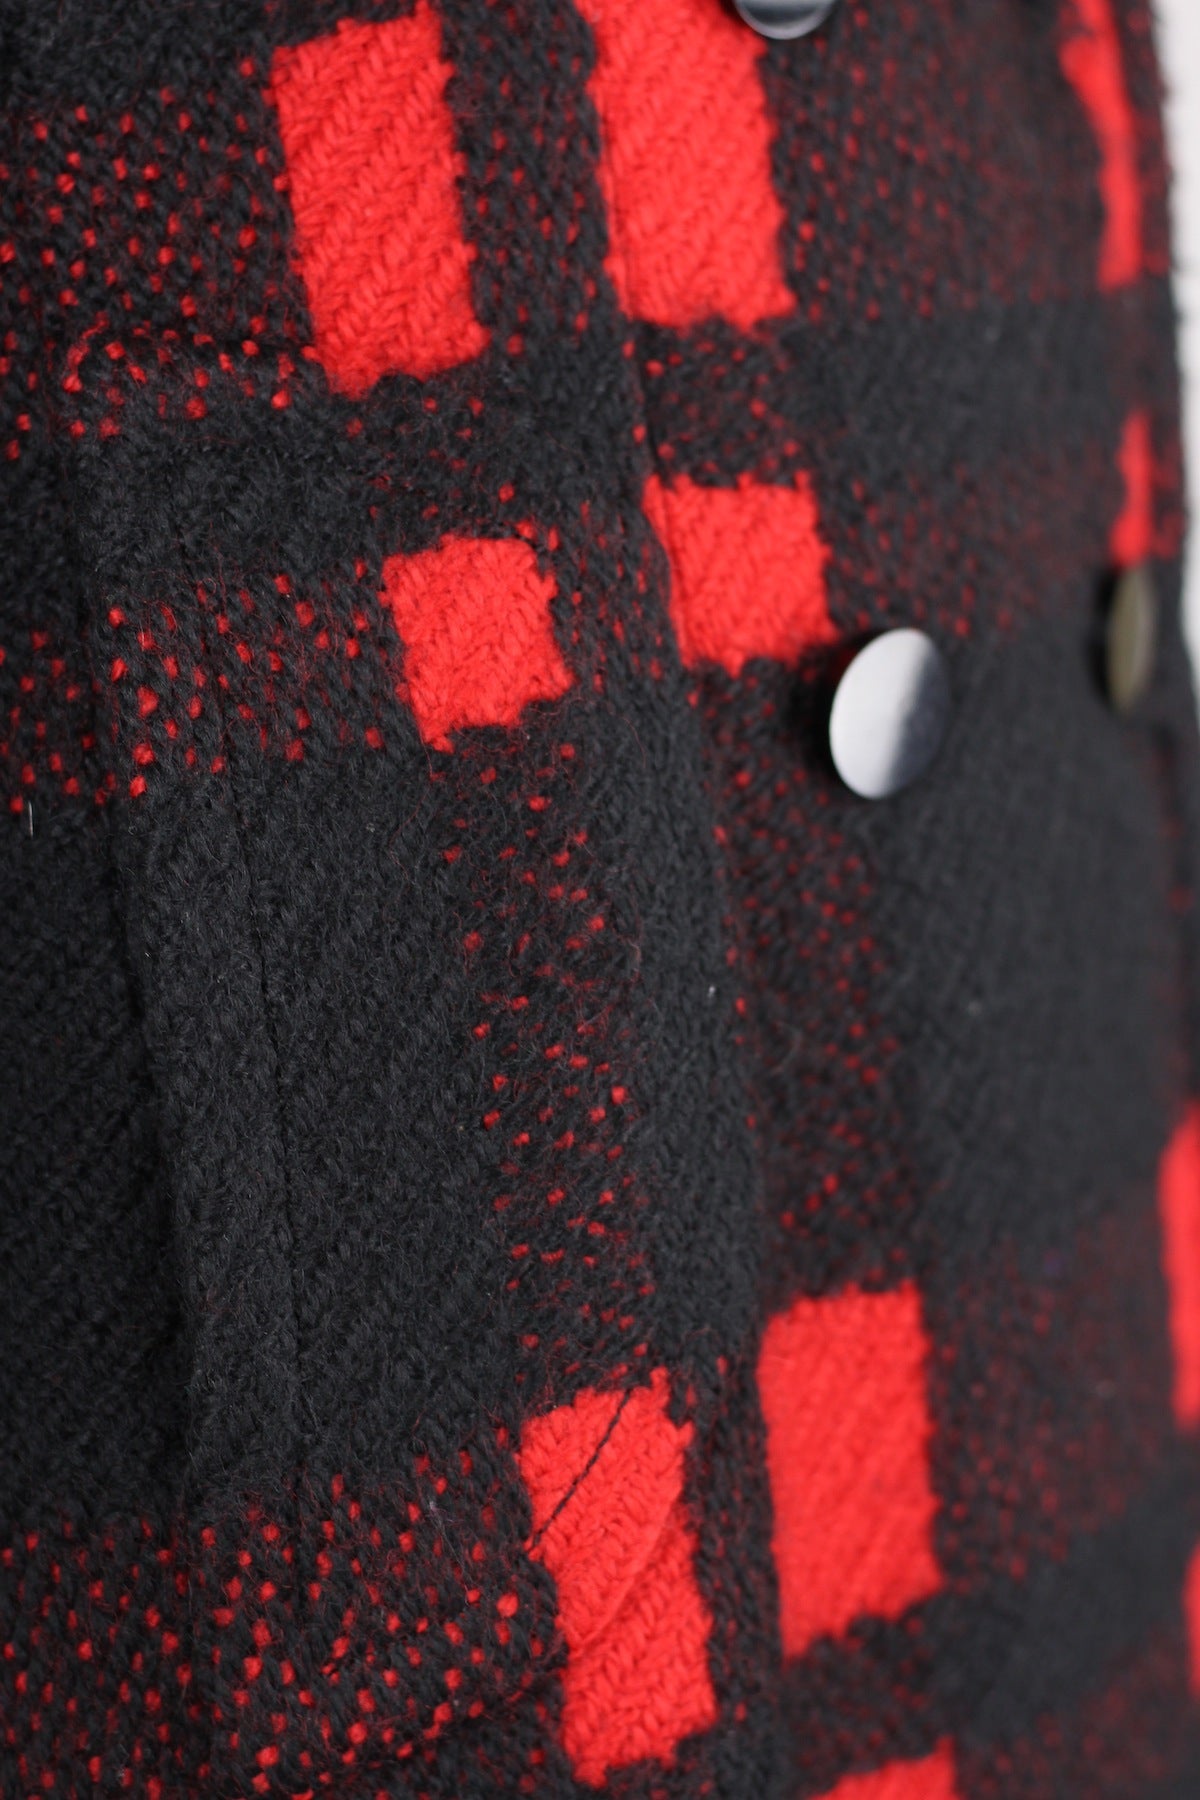 Rare Antonio Castillo (house of Lanvin) 1960s Red & Black Plaid Wool Coat